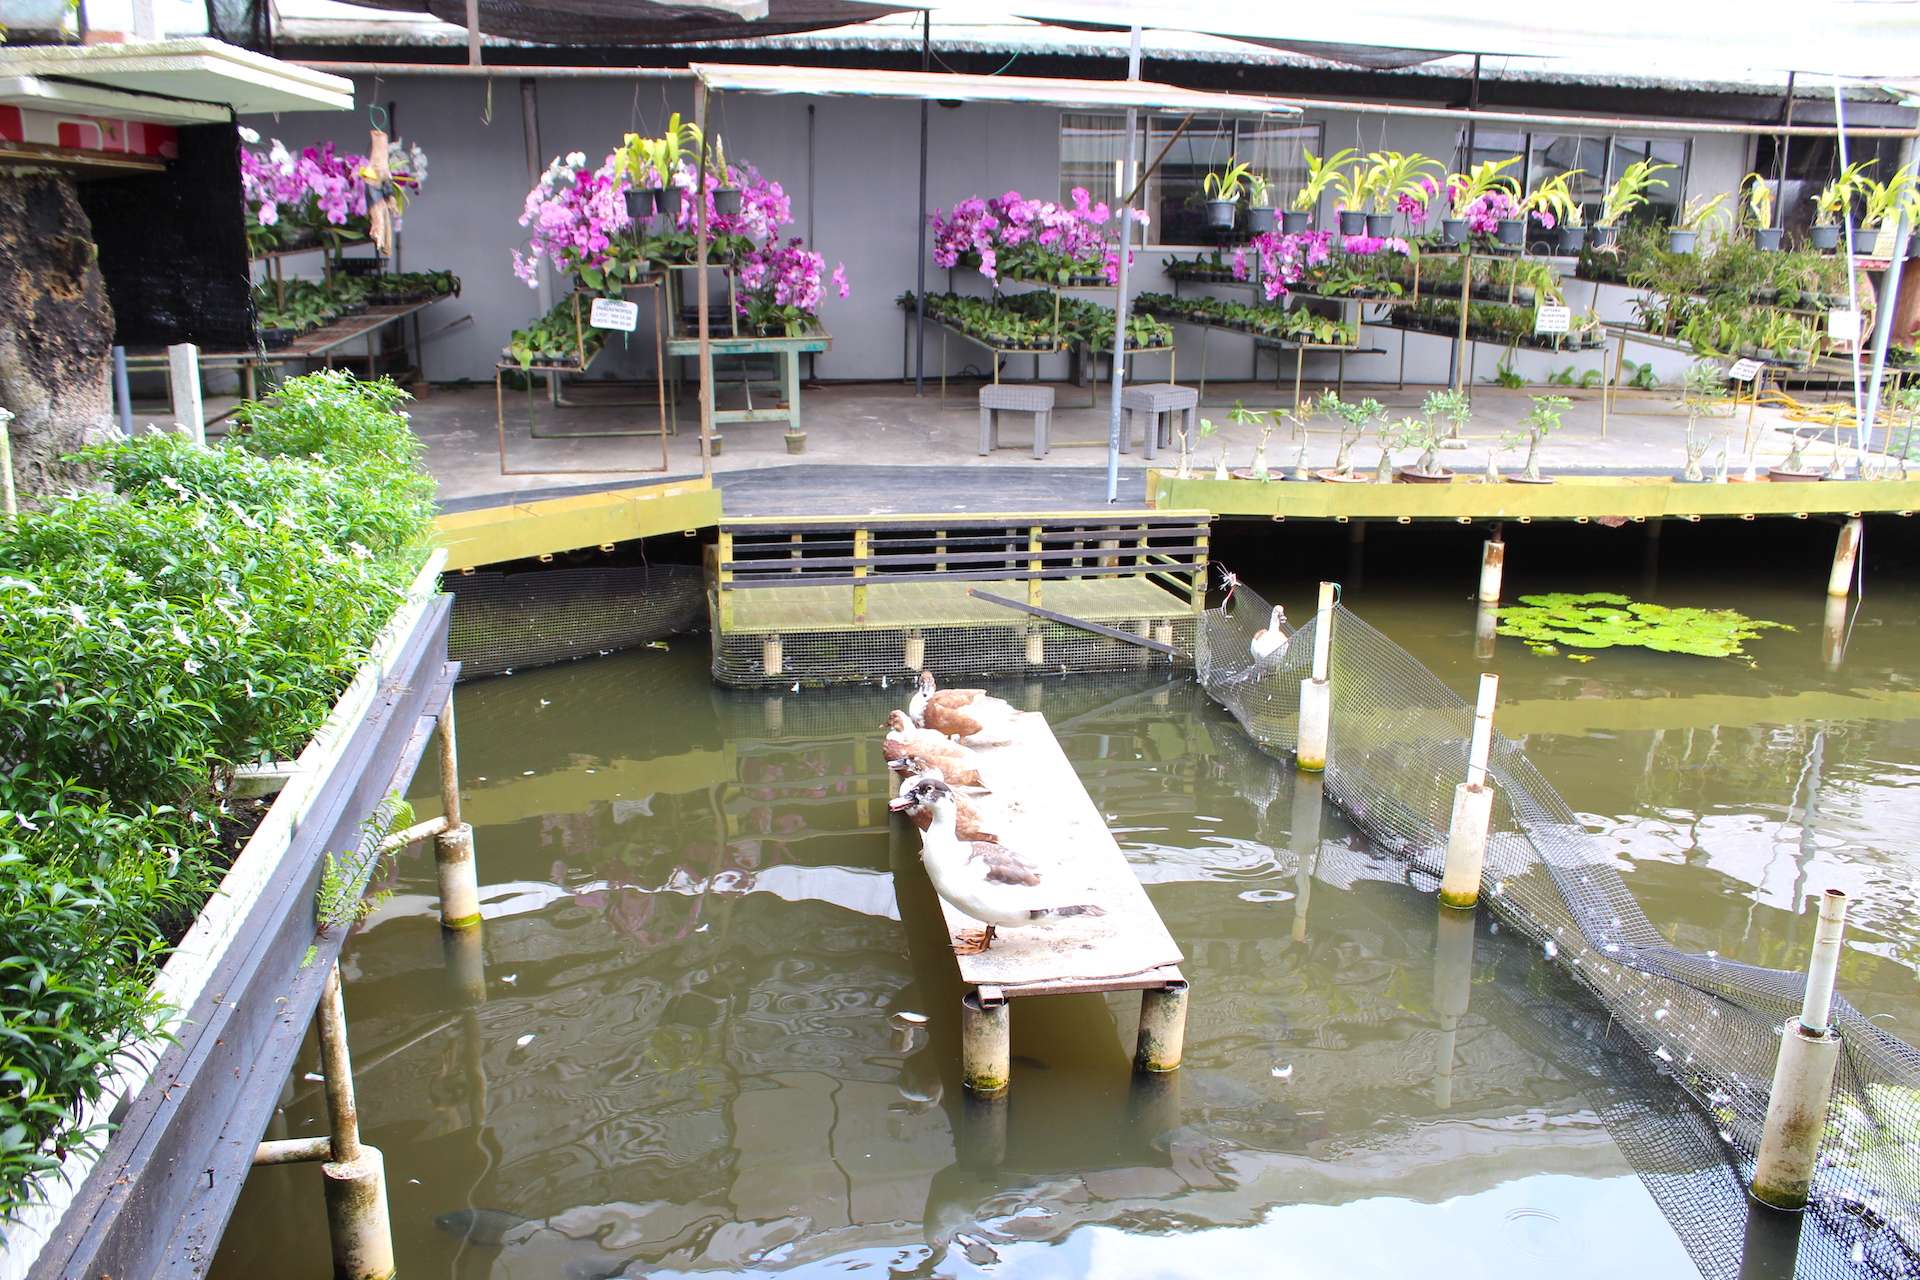 カフェの外の池には鴨が飼育されている